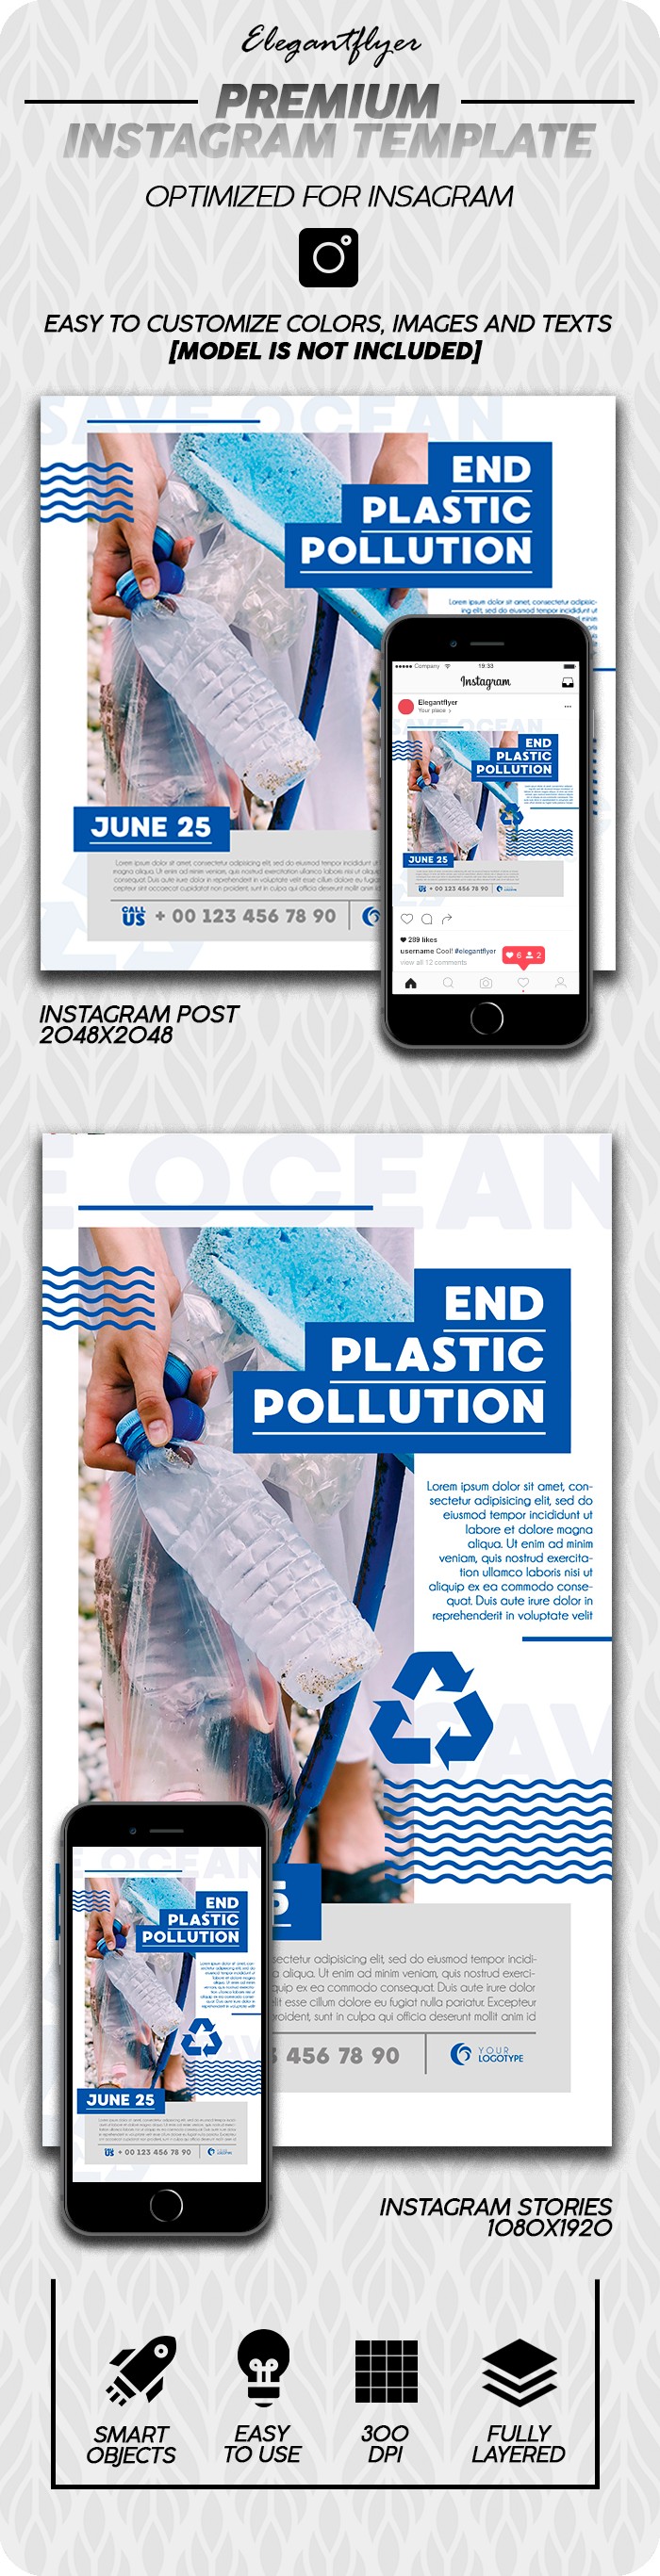 Problemy zanieczyszczenia mórz Instagram. by ElegantFlyer